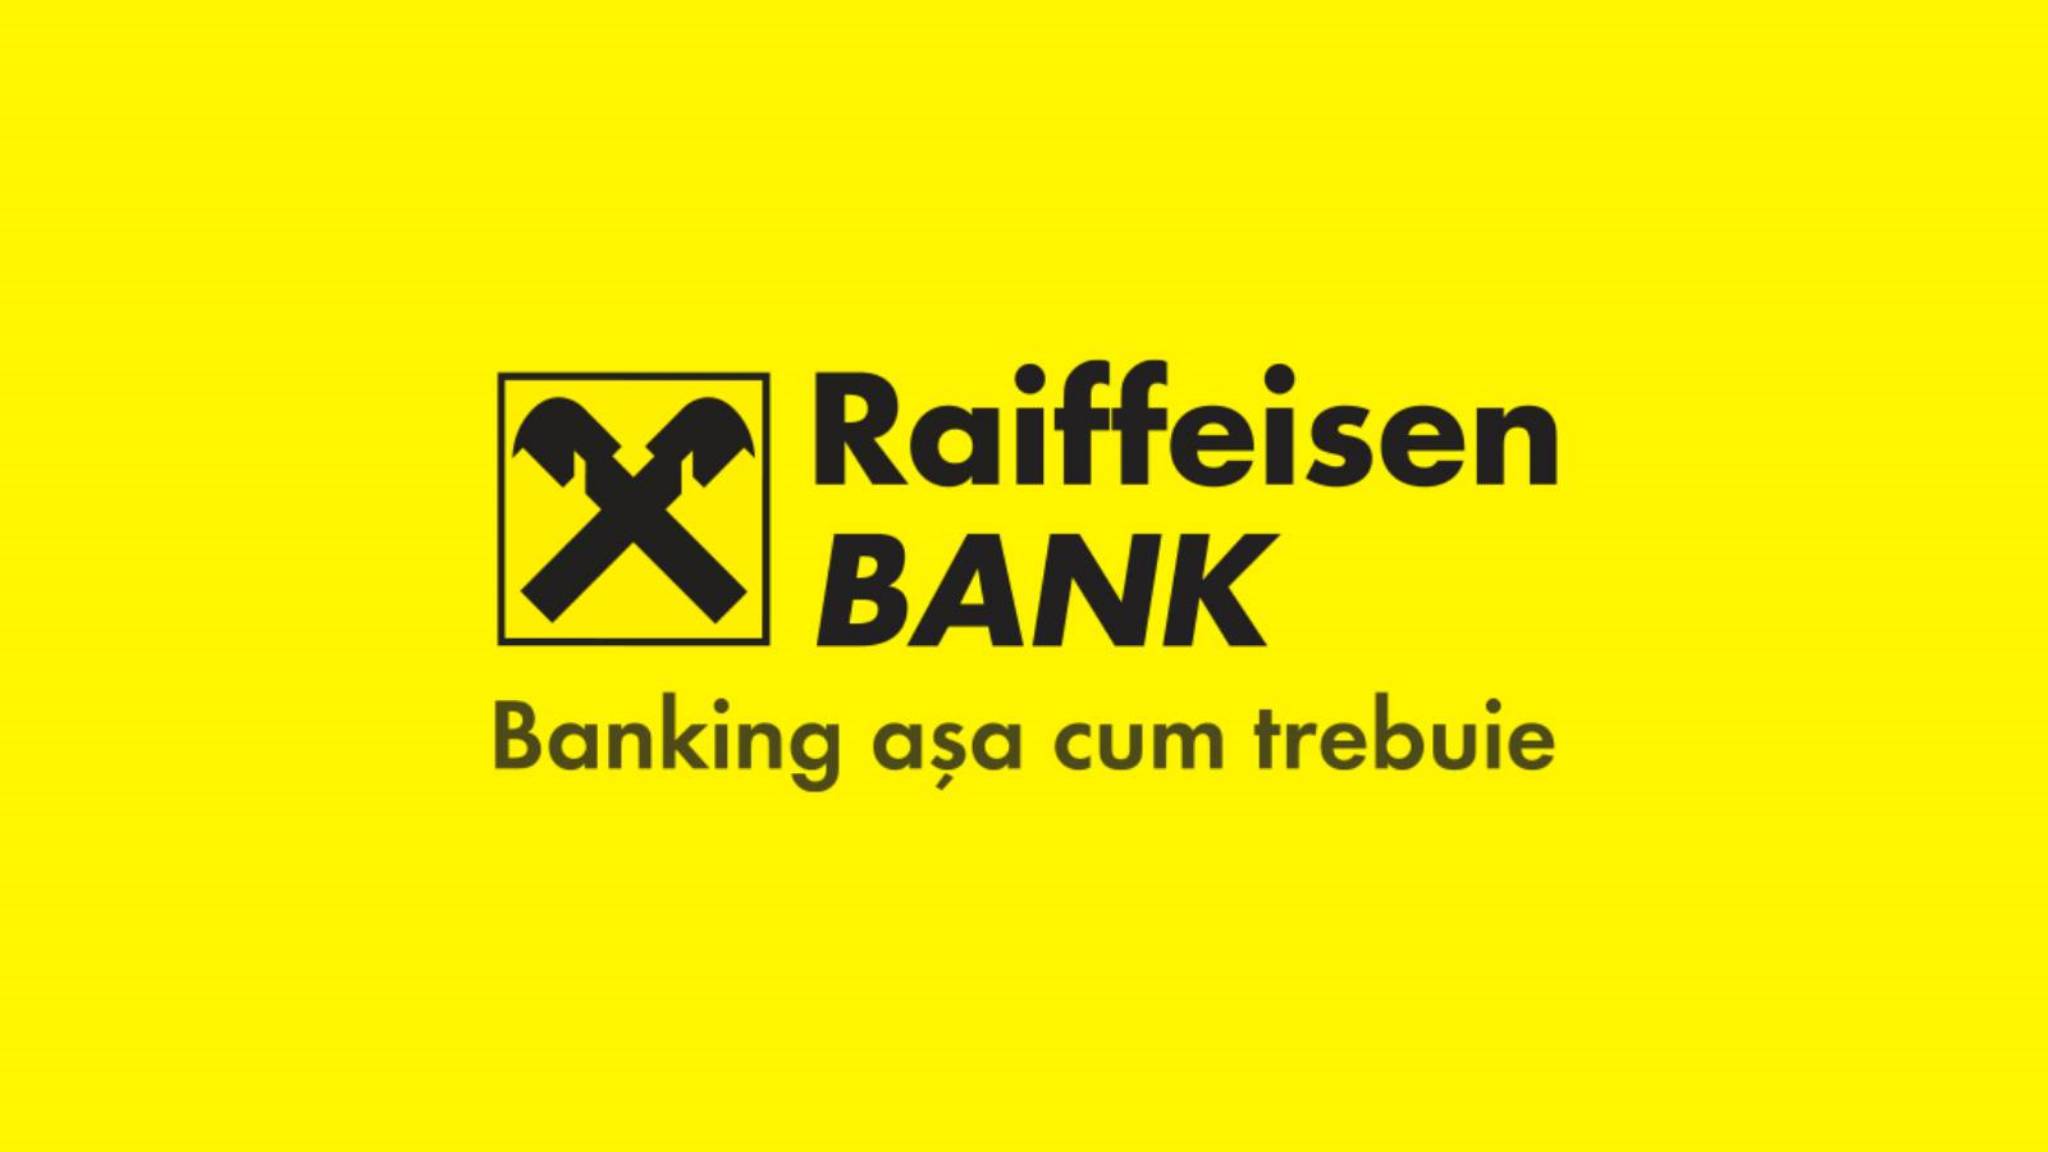 Raiffeisen Bank Officiellt Beslut SISTA MOMENT Åtgärder Kunder Rumänien